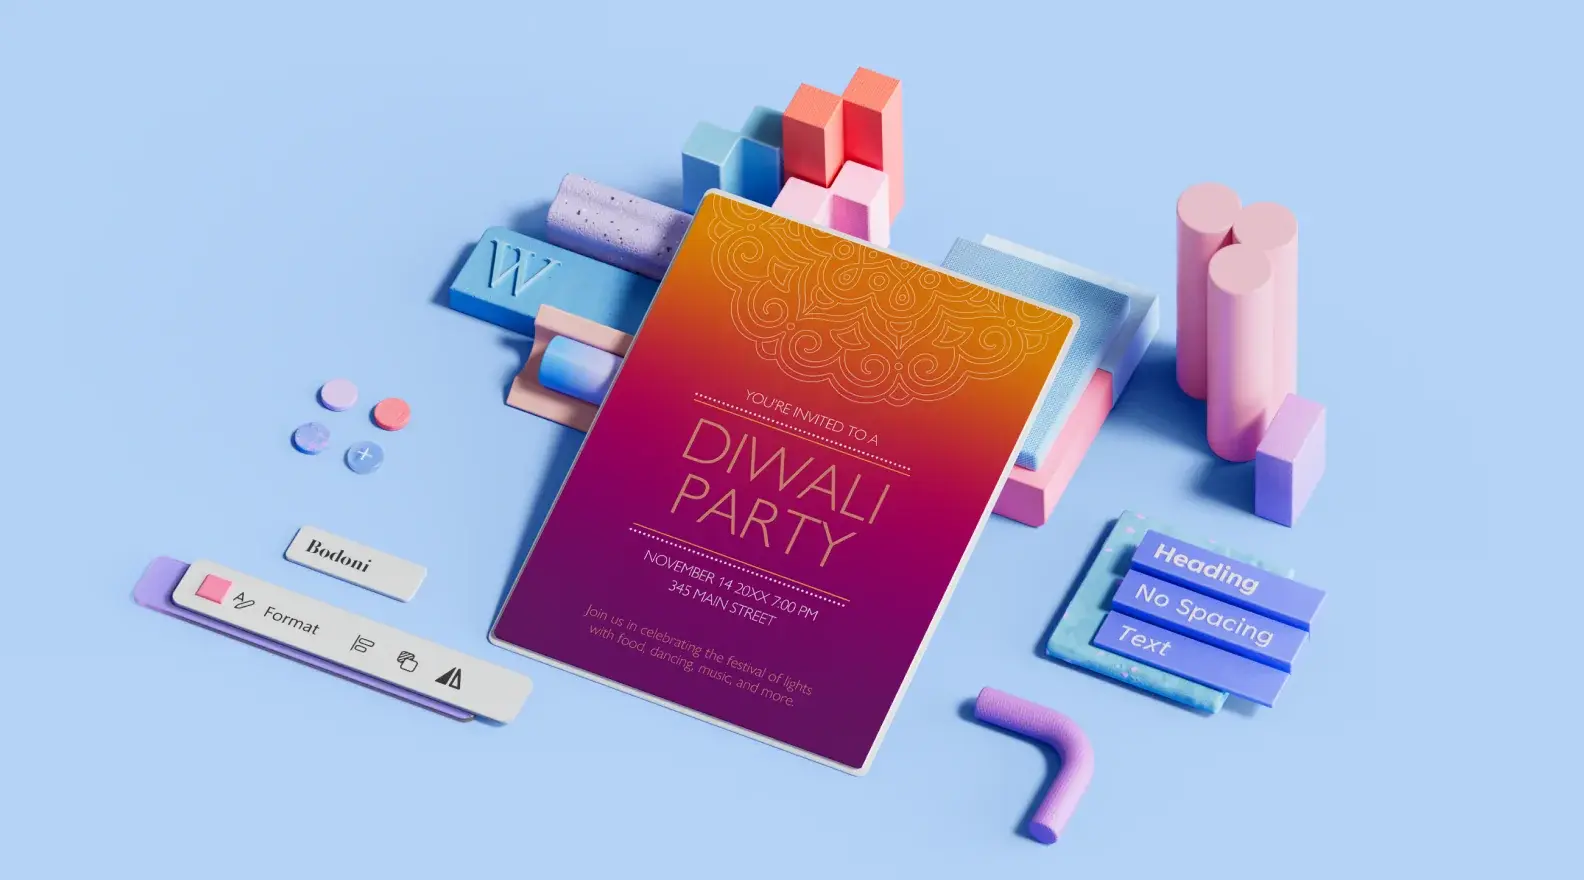 Πρότυπο φυλλαδίου εκδήλωσης του φεστιβάλ Diwali που περιβάλλεται από 3D στοιχεία σχεδιασμού